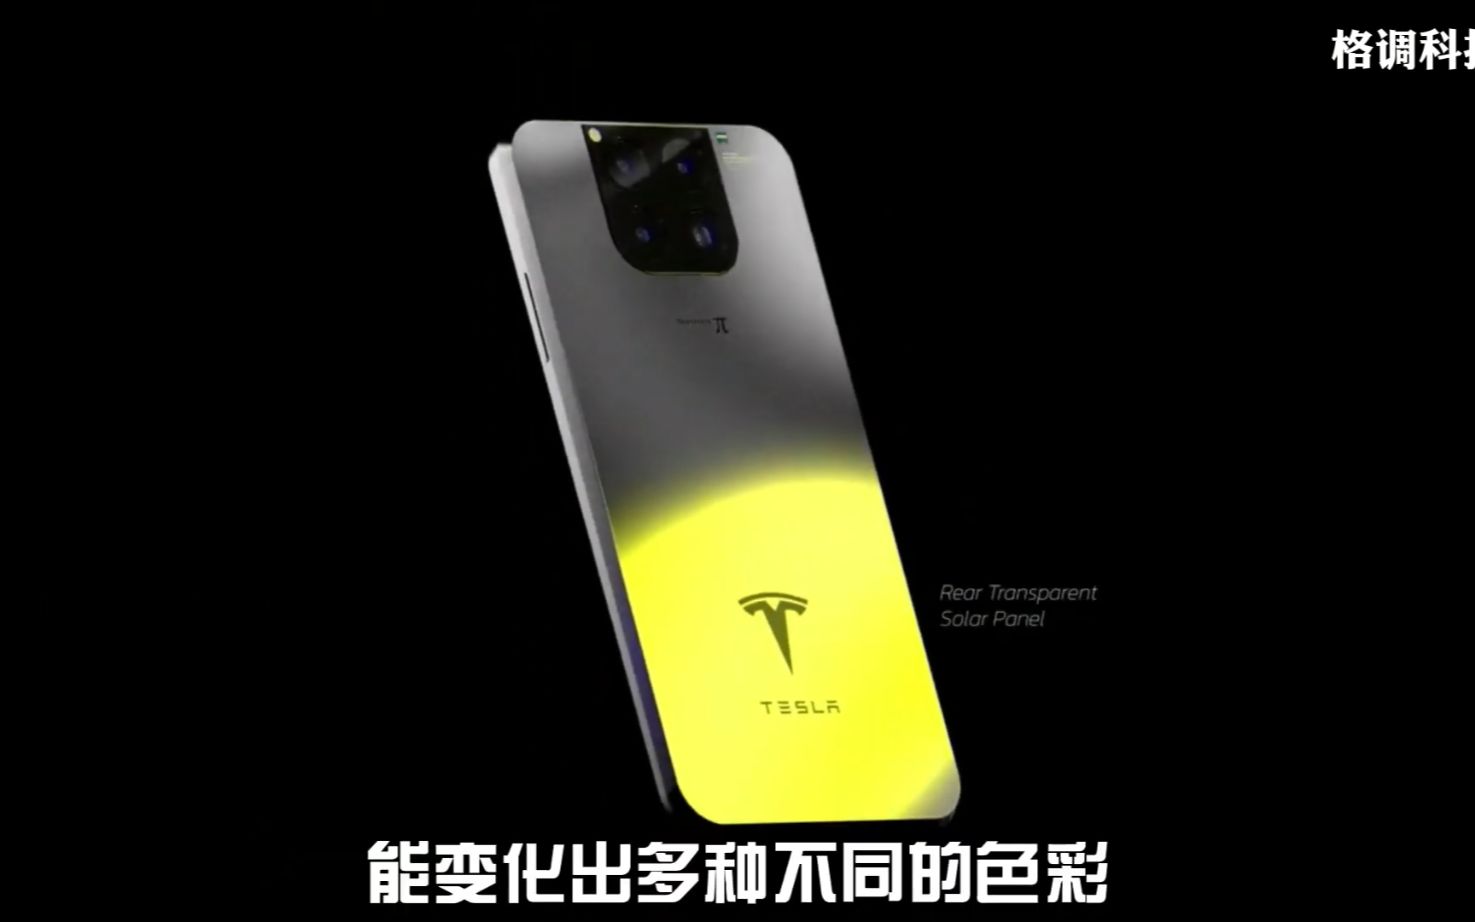 特斯拉手机型号π将于2月20日开始销售 - 哔哩哔哩